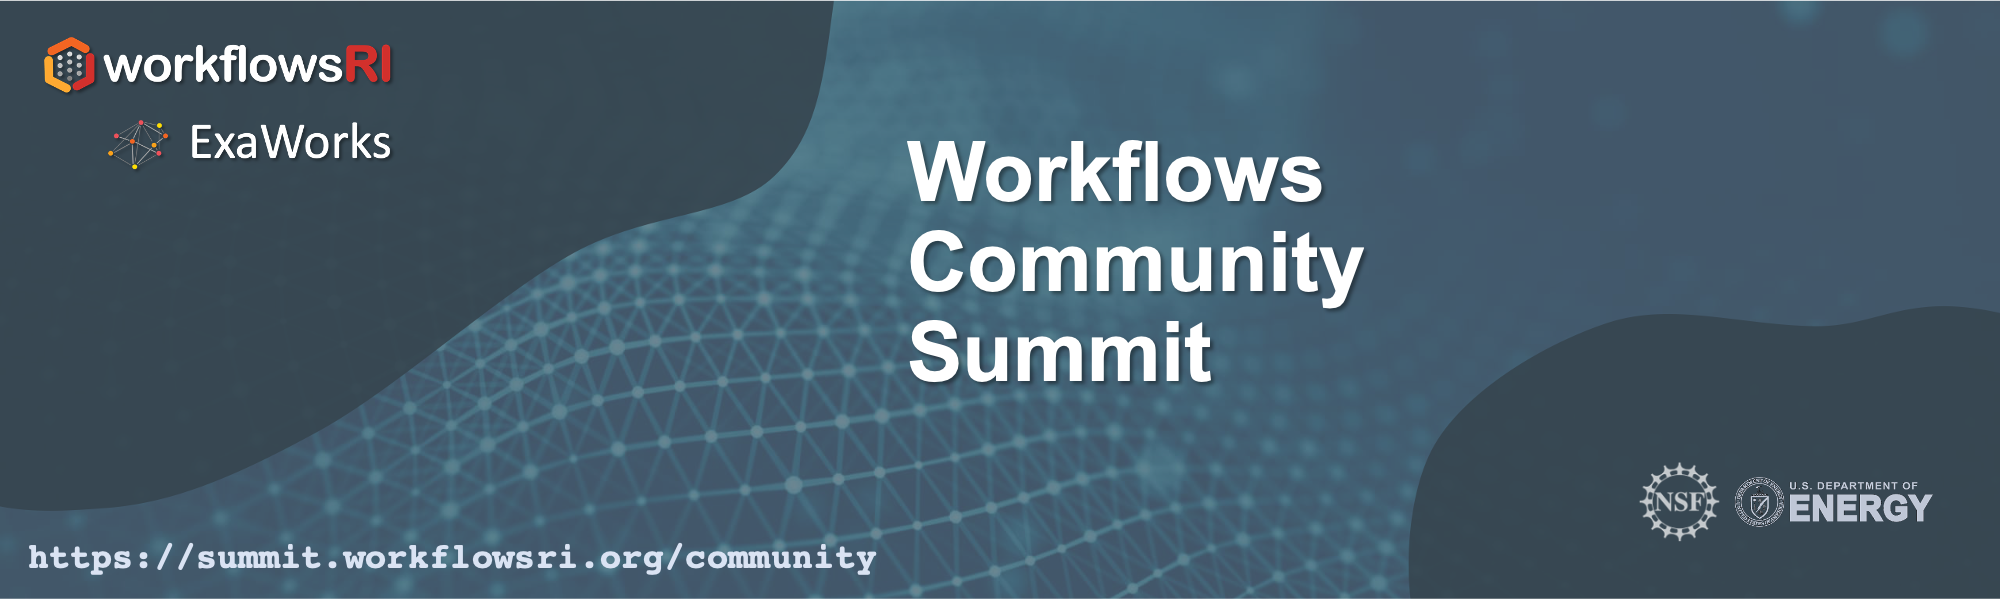 Workflows Community Summit